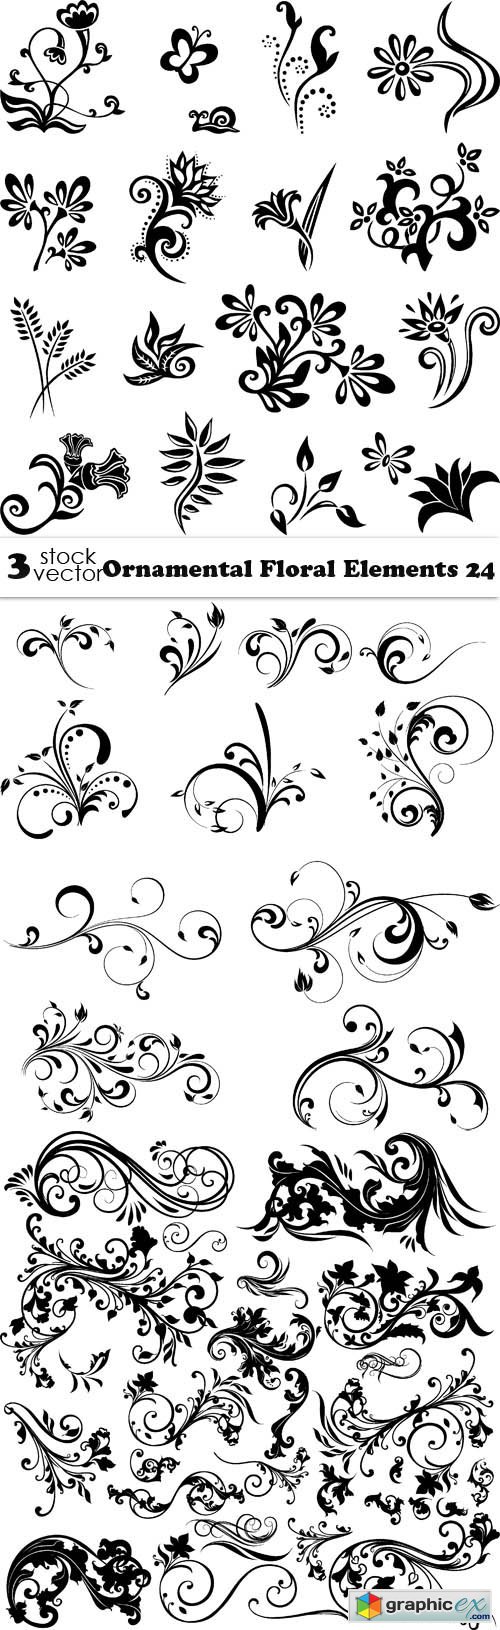 Vectors - Ornamental Floral Elements 24